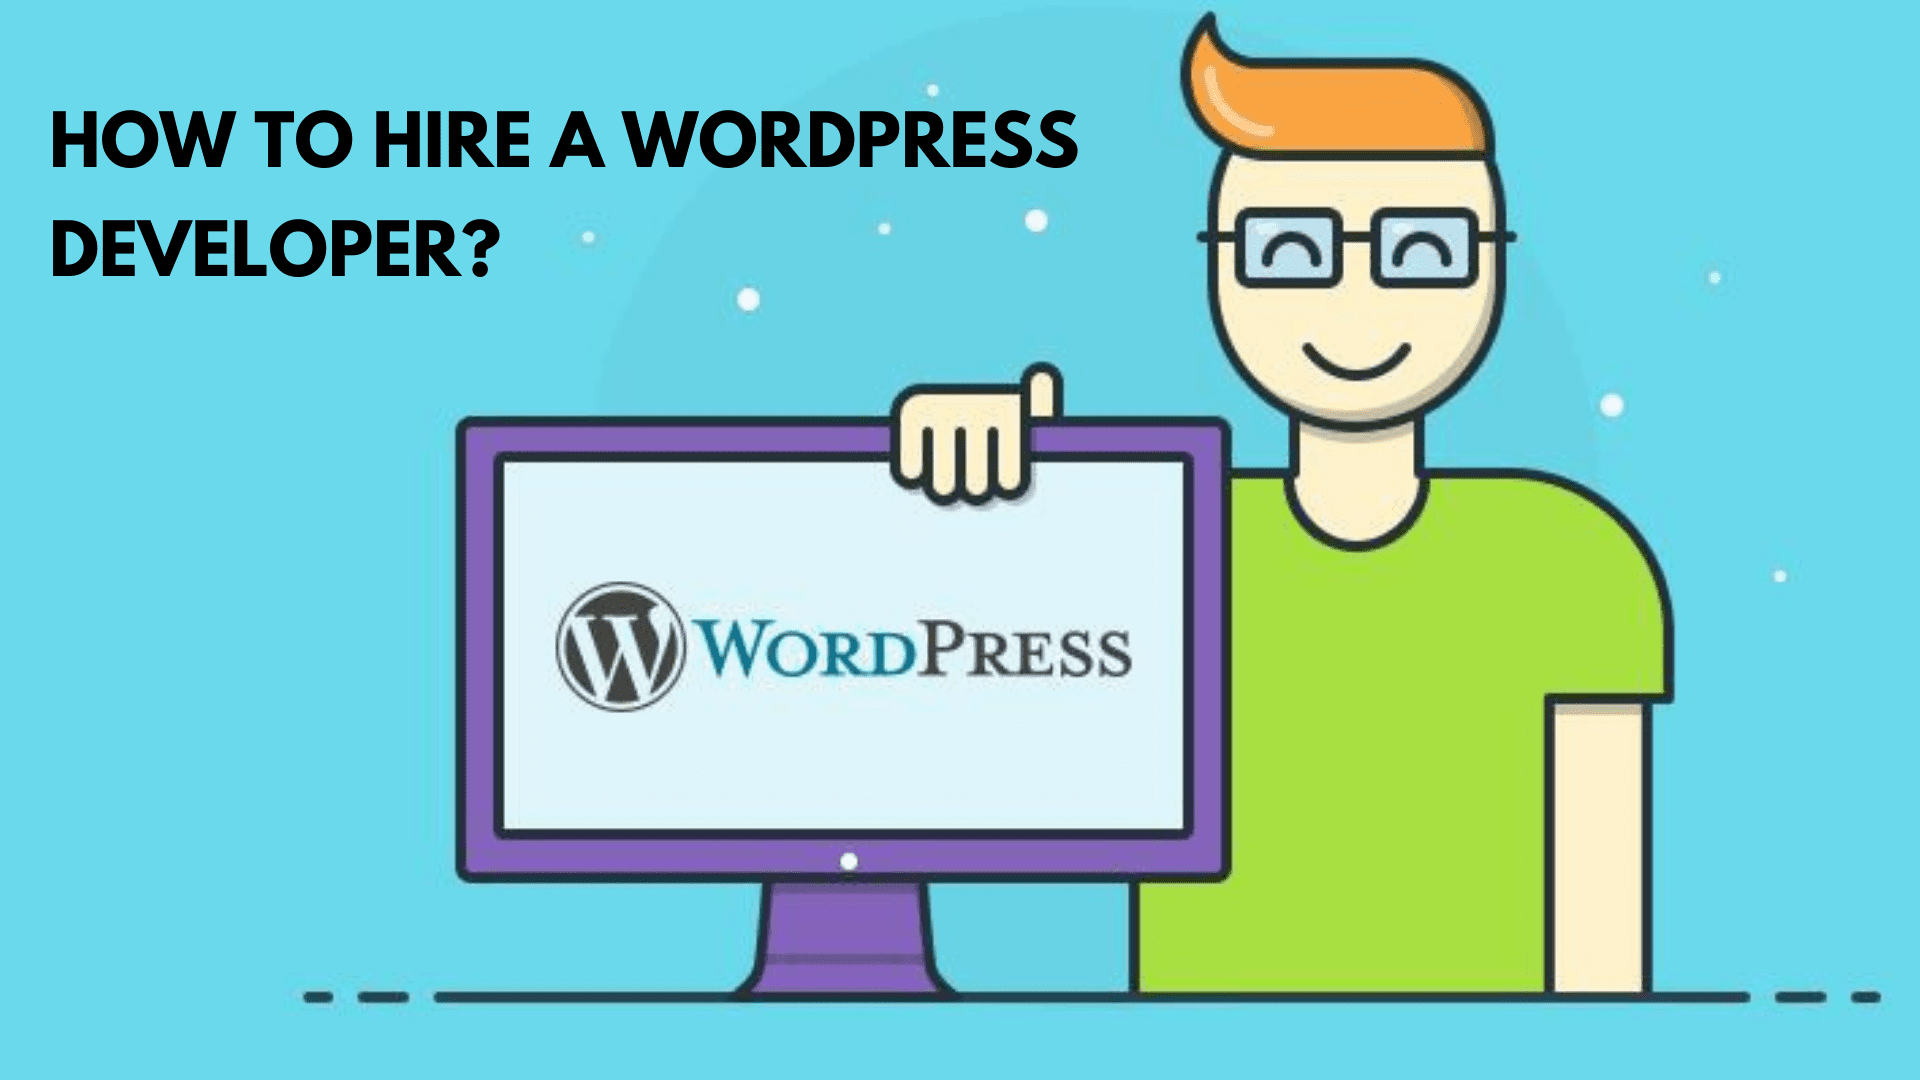 Hire a WordPress expert